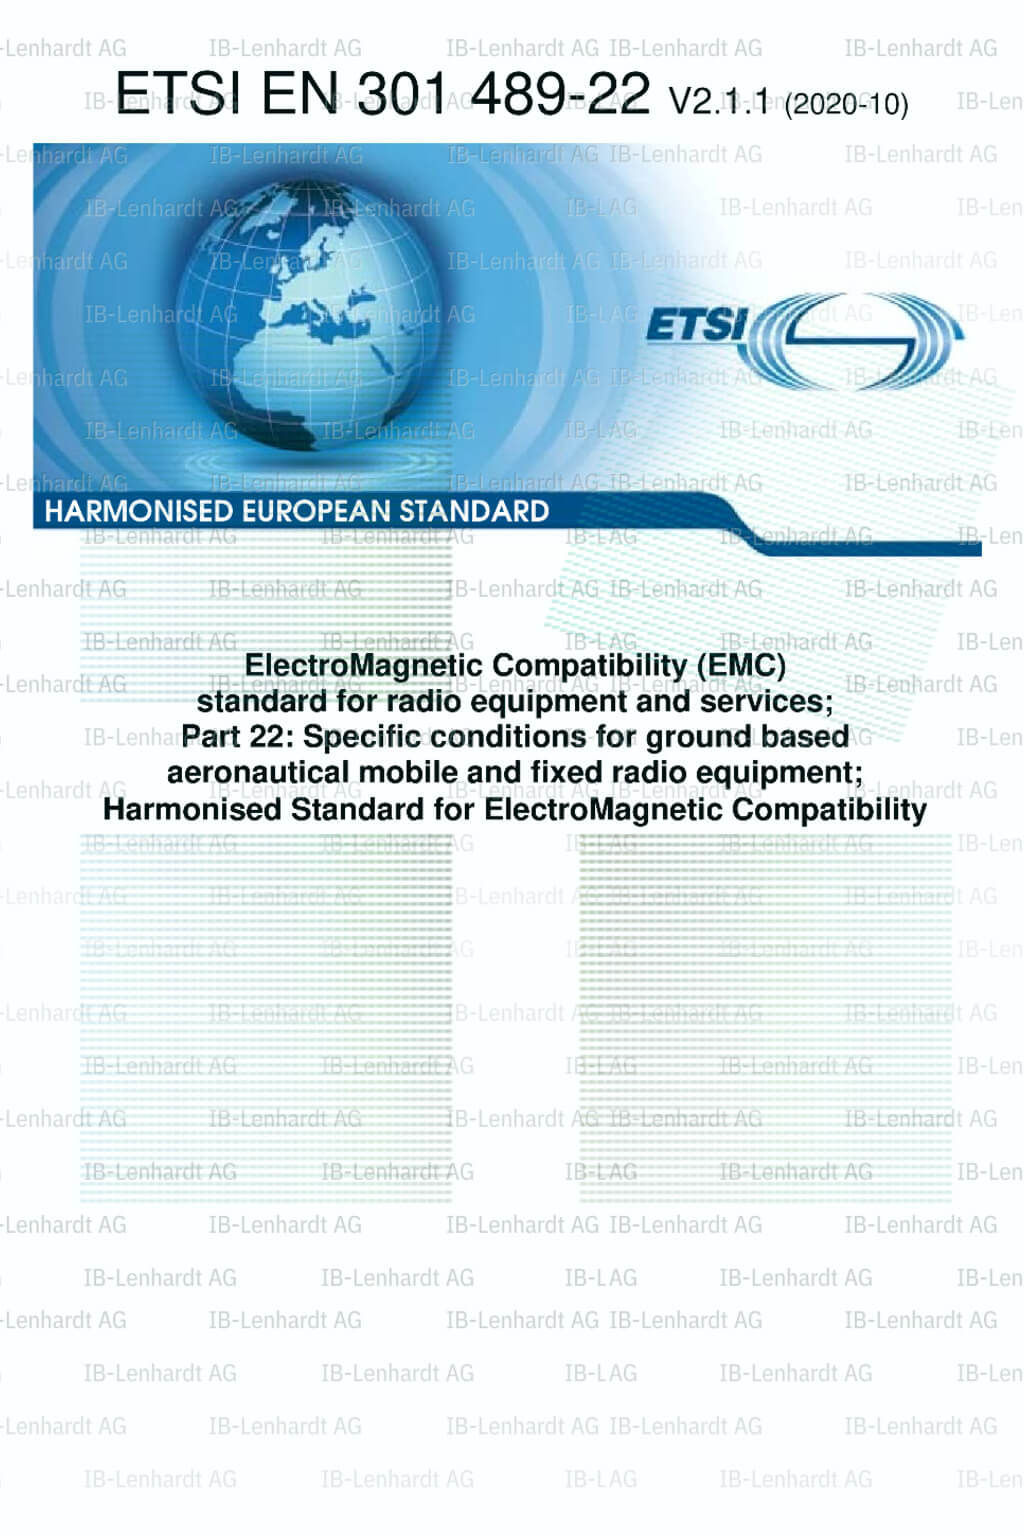 ETSI EN 301 489-22 V2.1.1